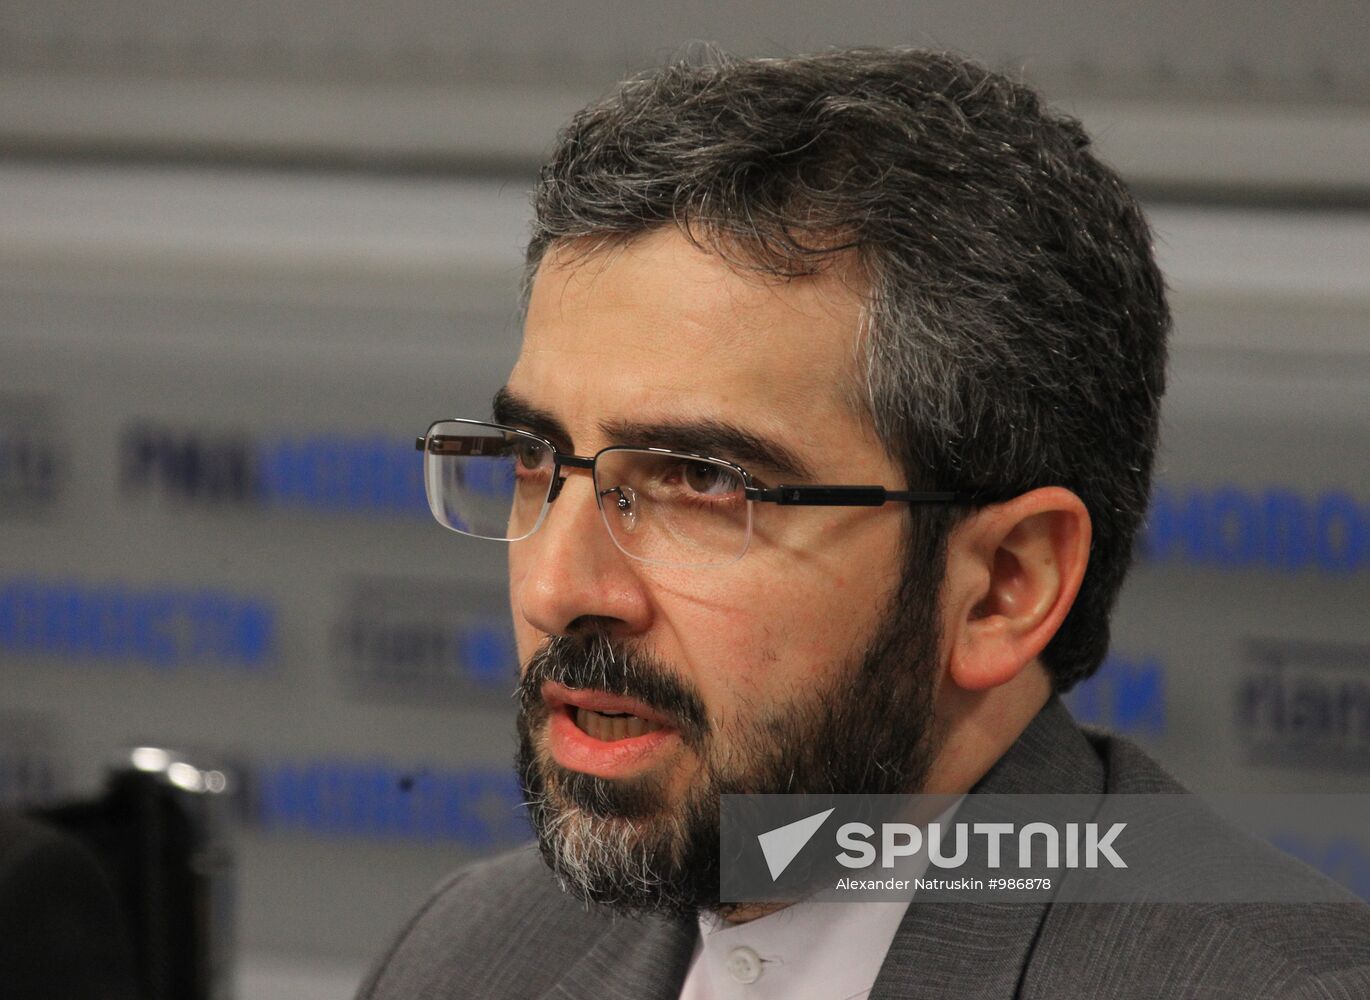 Press conference by Ali Bagiri at RIA Novosti agency